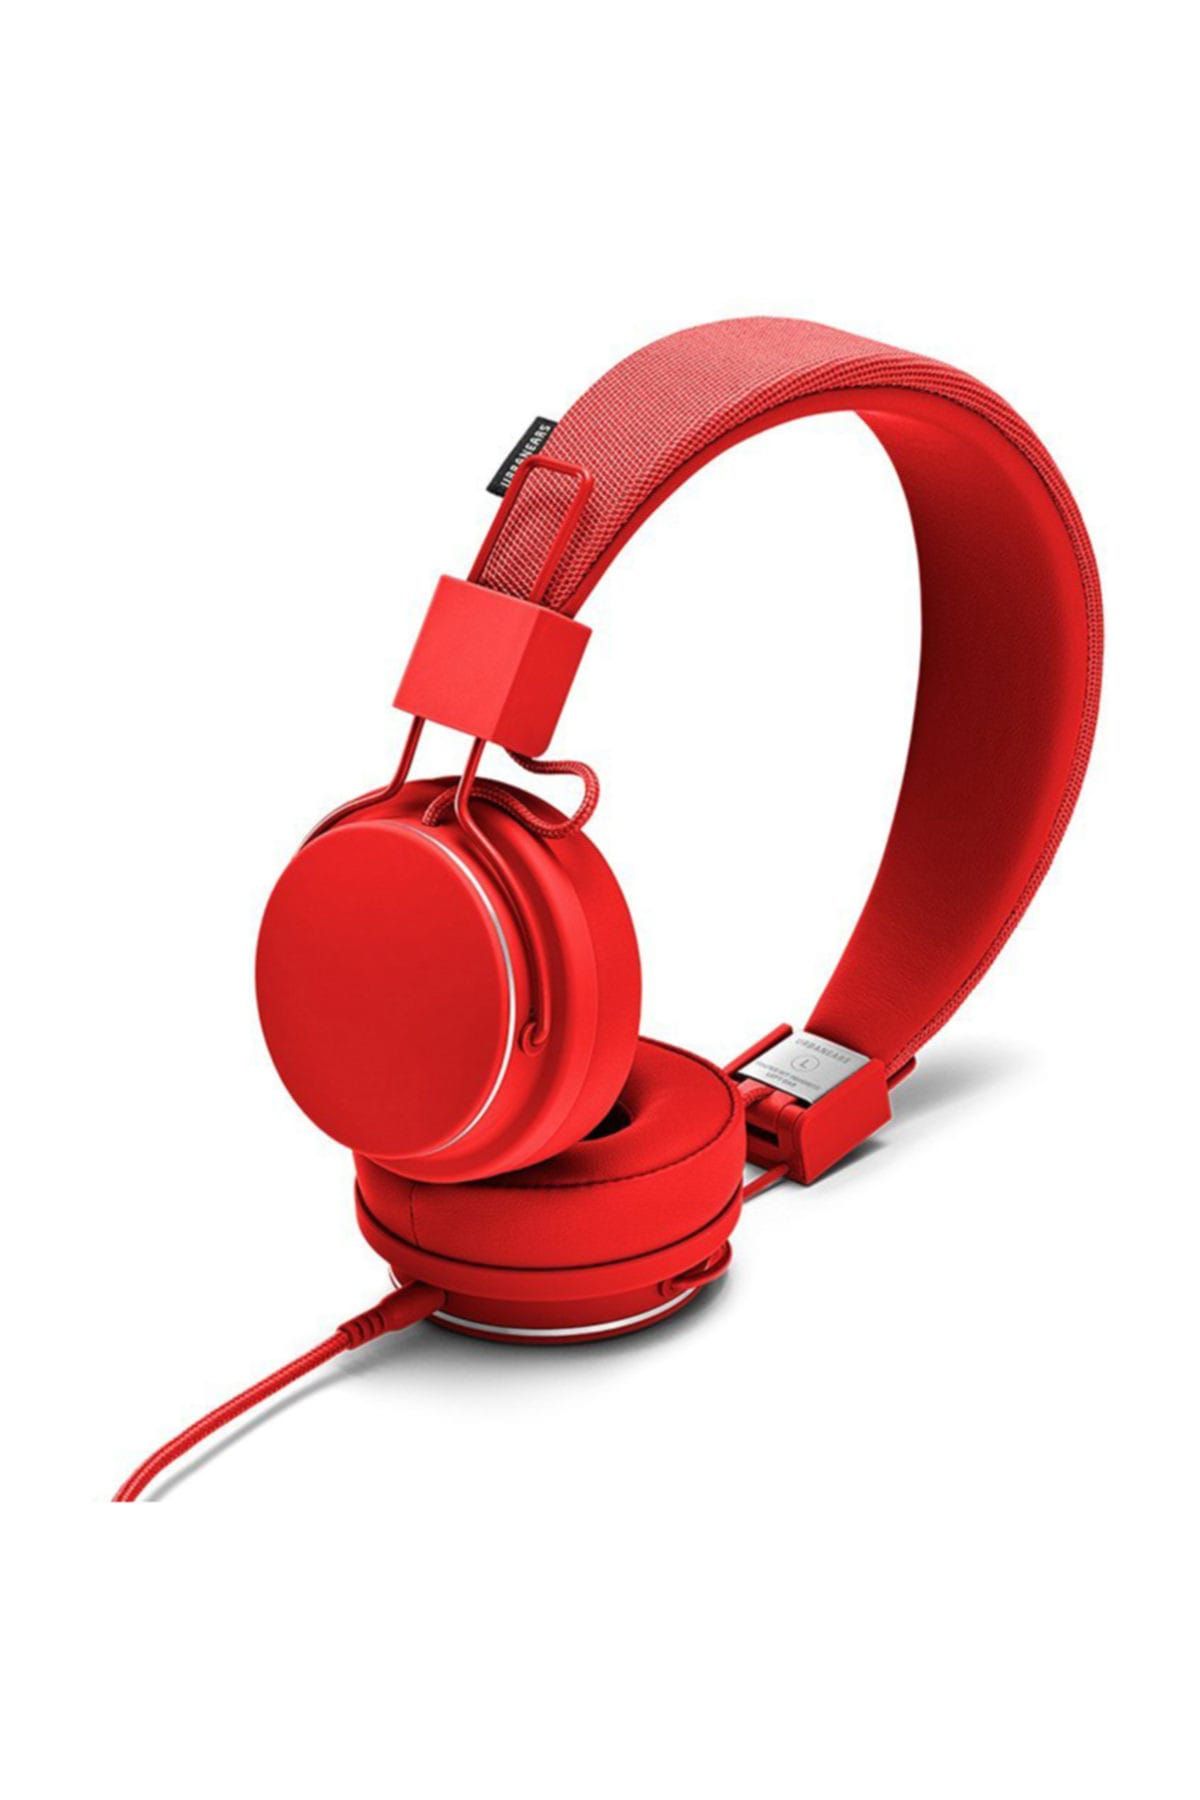 Urbanears Plattan 2 Kırmızı Mikrofonlu Kulak Üstü Kulaklık (Urbanears Türkiye Garantili)